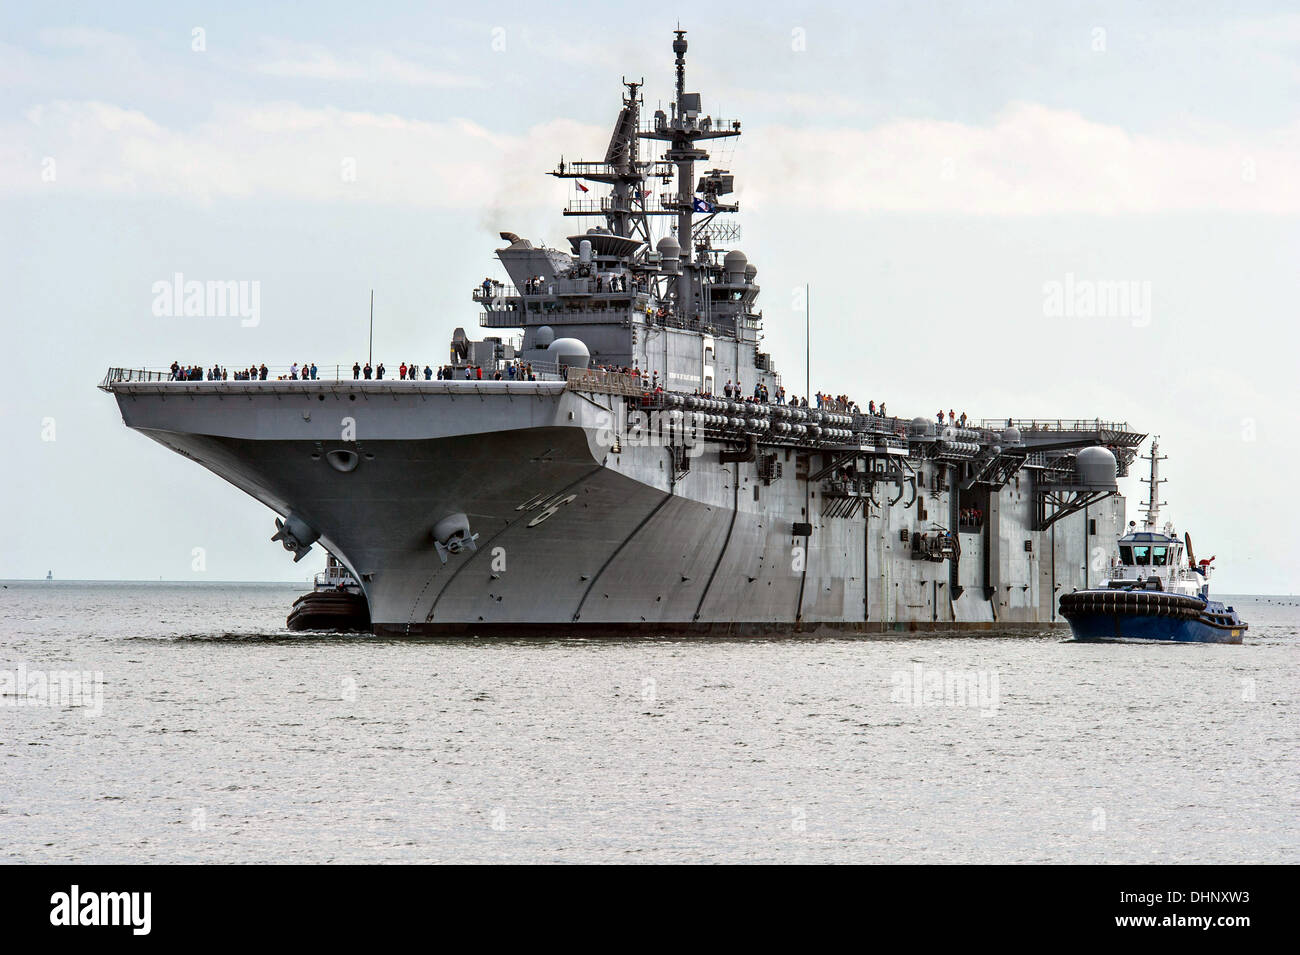 La US Navy USS Latina vuelve a Huntington Ingalls astillero constructor después de completar las pruebas de mar previas a la puesta en marcha el 9 de noviembre de 2013 en Pascagoula, MS. Los Estados Unidos será el primer barco de su clase, en reemplazo de la clase Tarawa de buques de asalto anfibio. Foto de stock